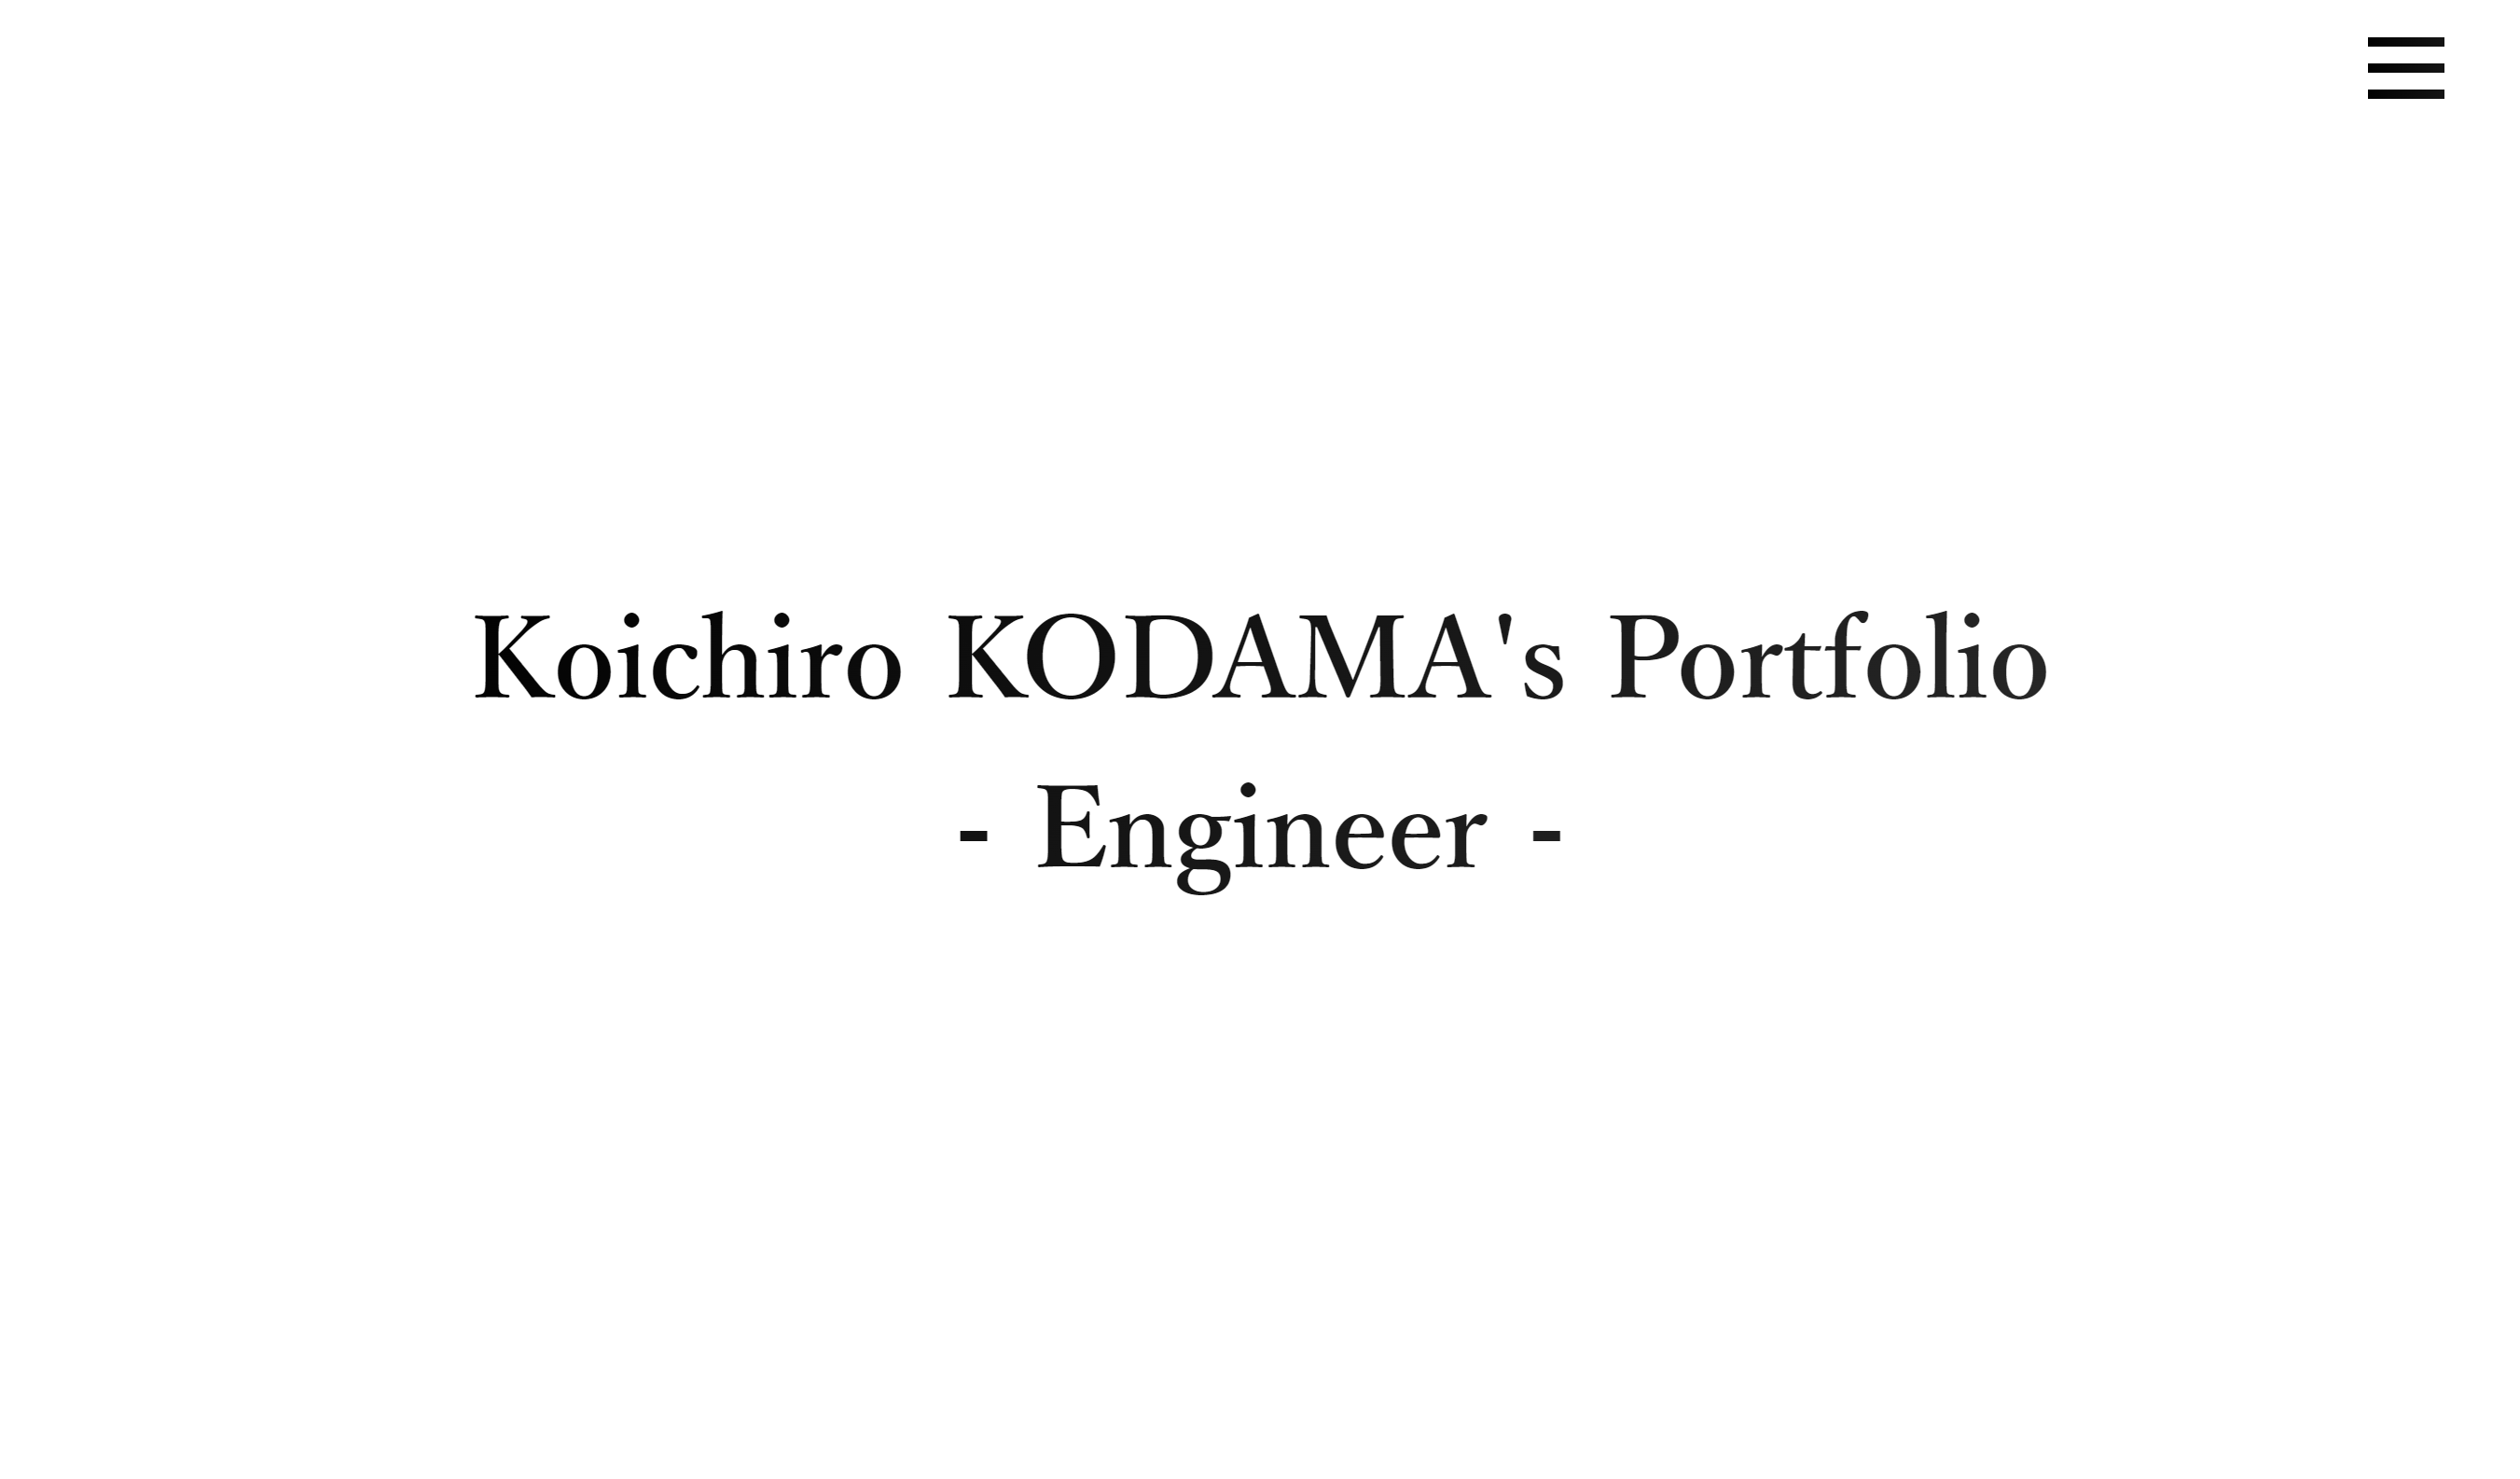 Koichiro Kodama's Portfolio